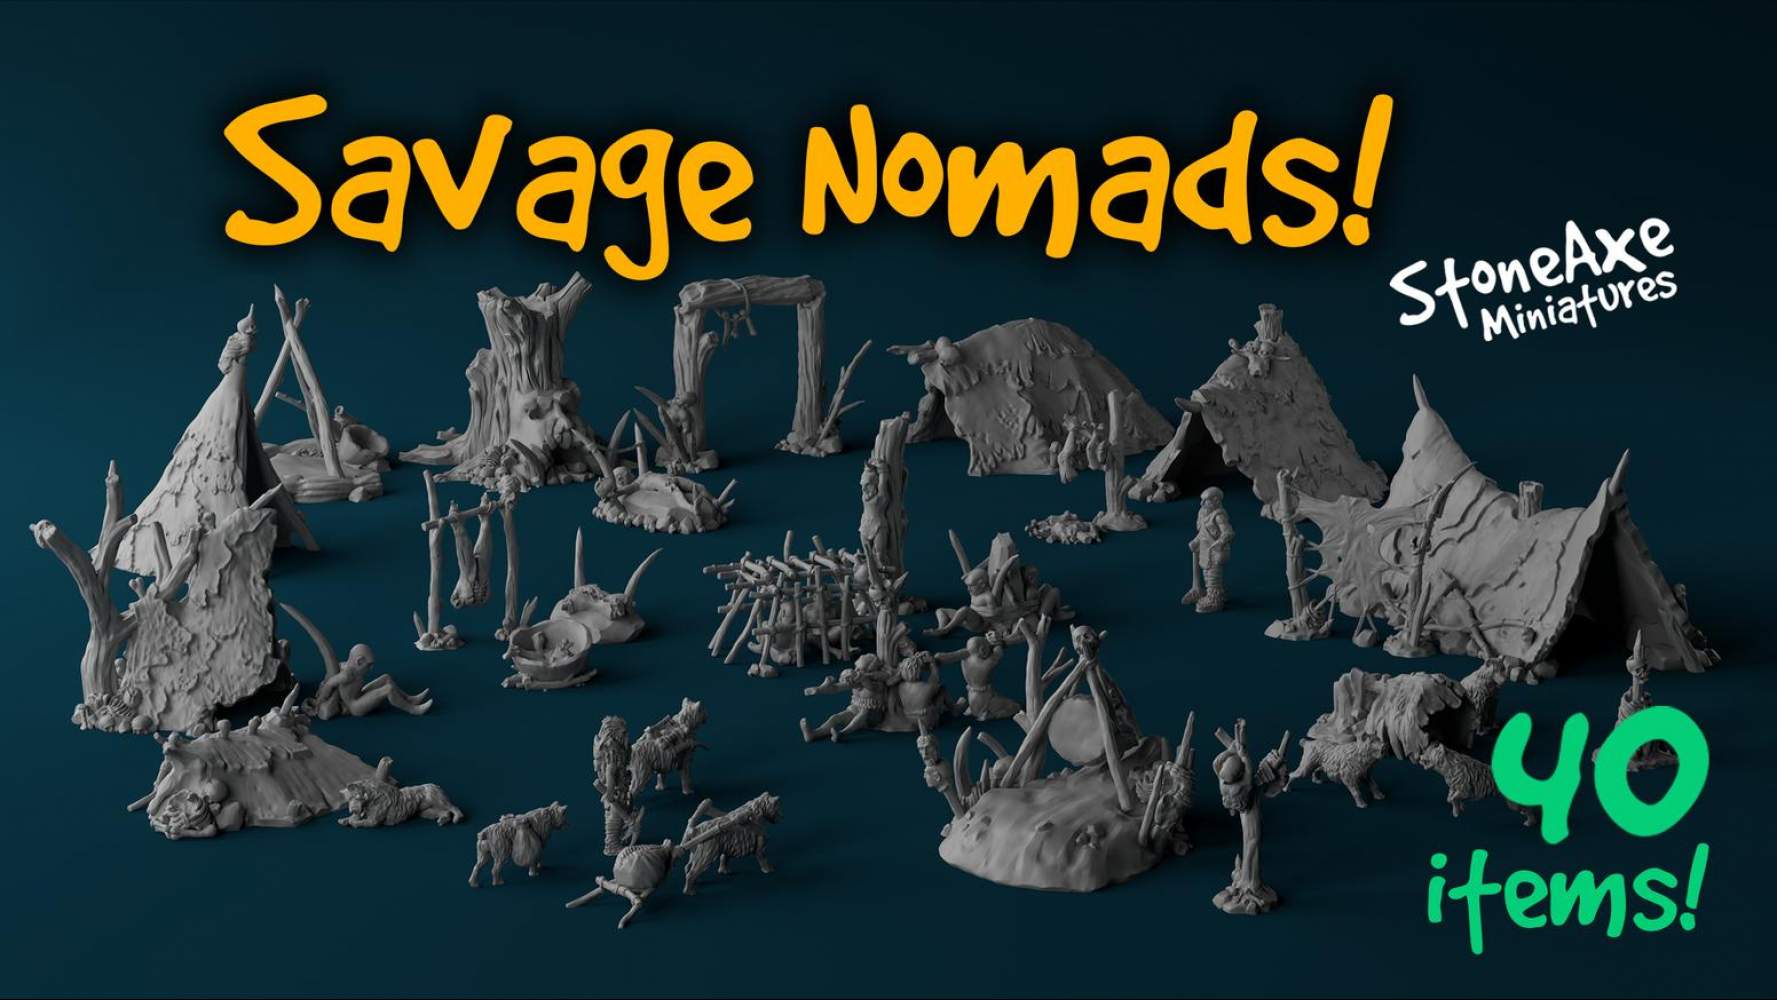 Savage Nomads! - Printable stl 3d models for wargaming